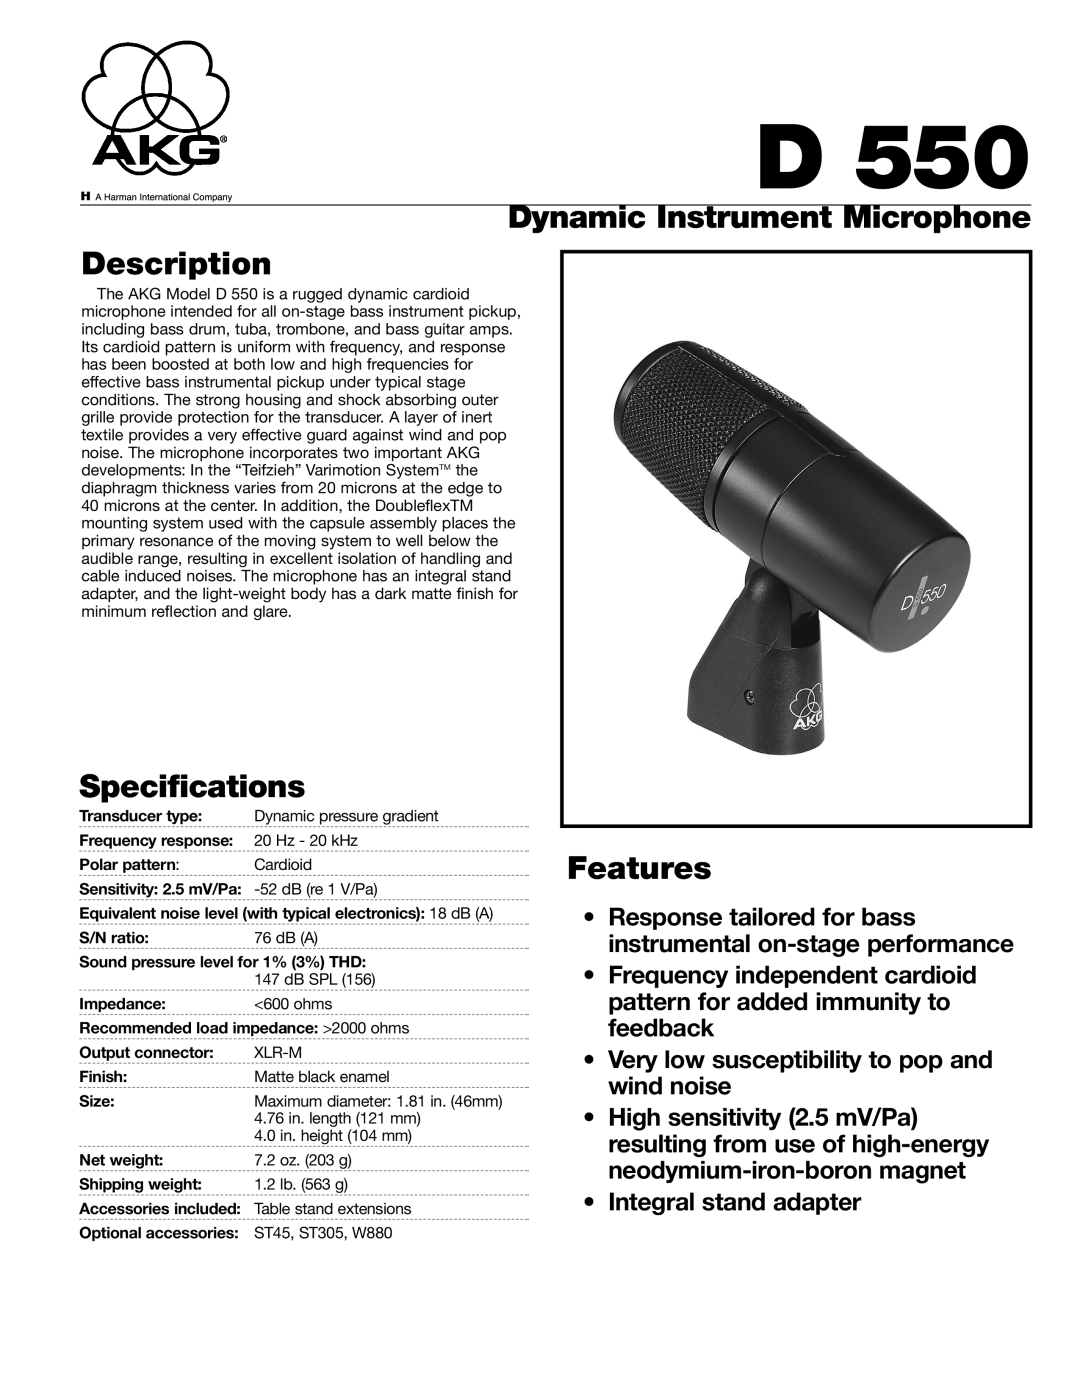 AKG Acoustics D550 specifications Dynamic Instrument Microphone Description, Specifications, Features 